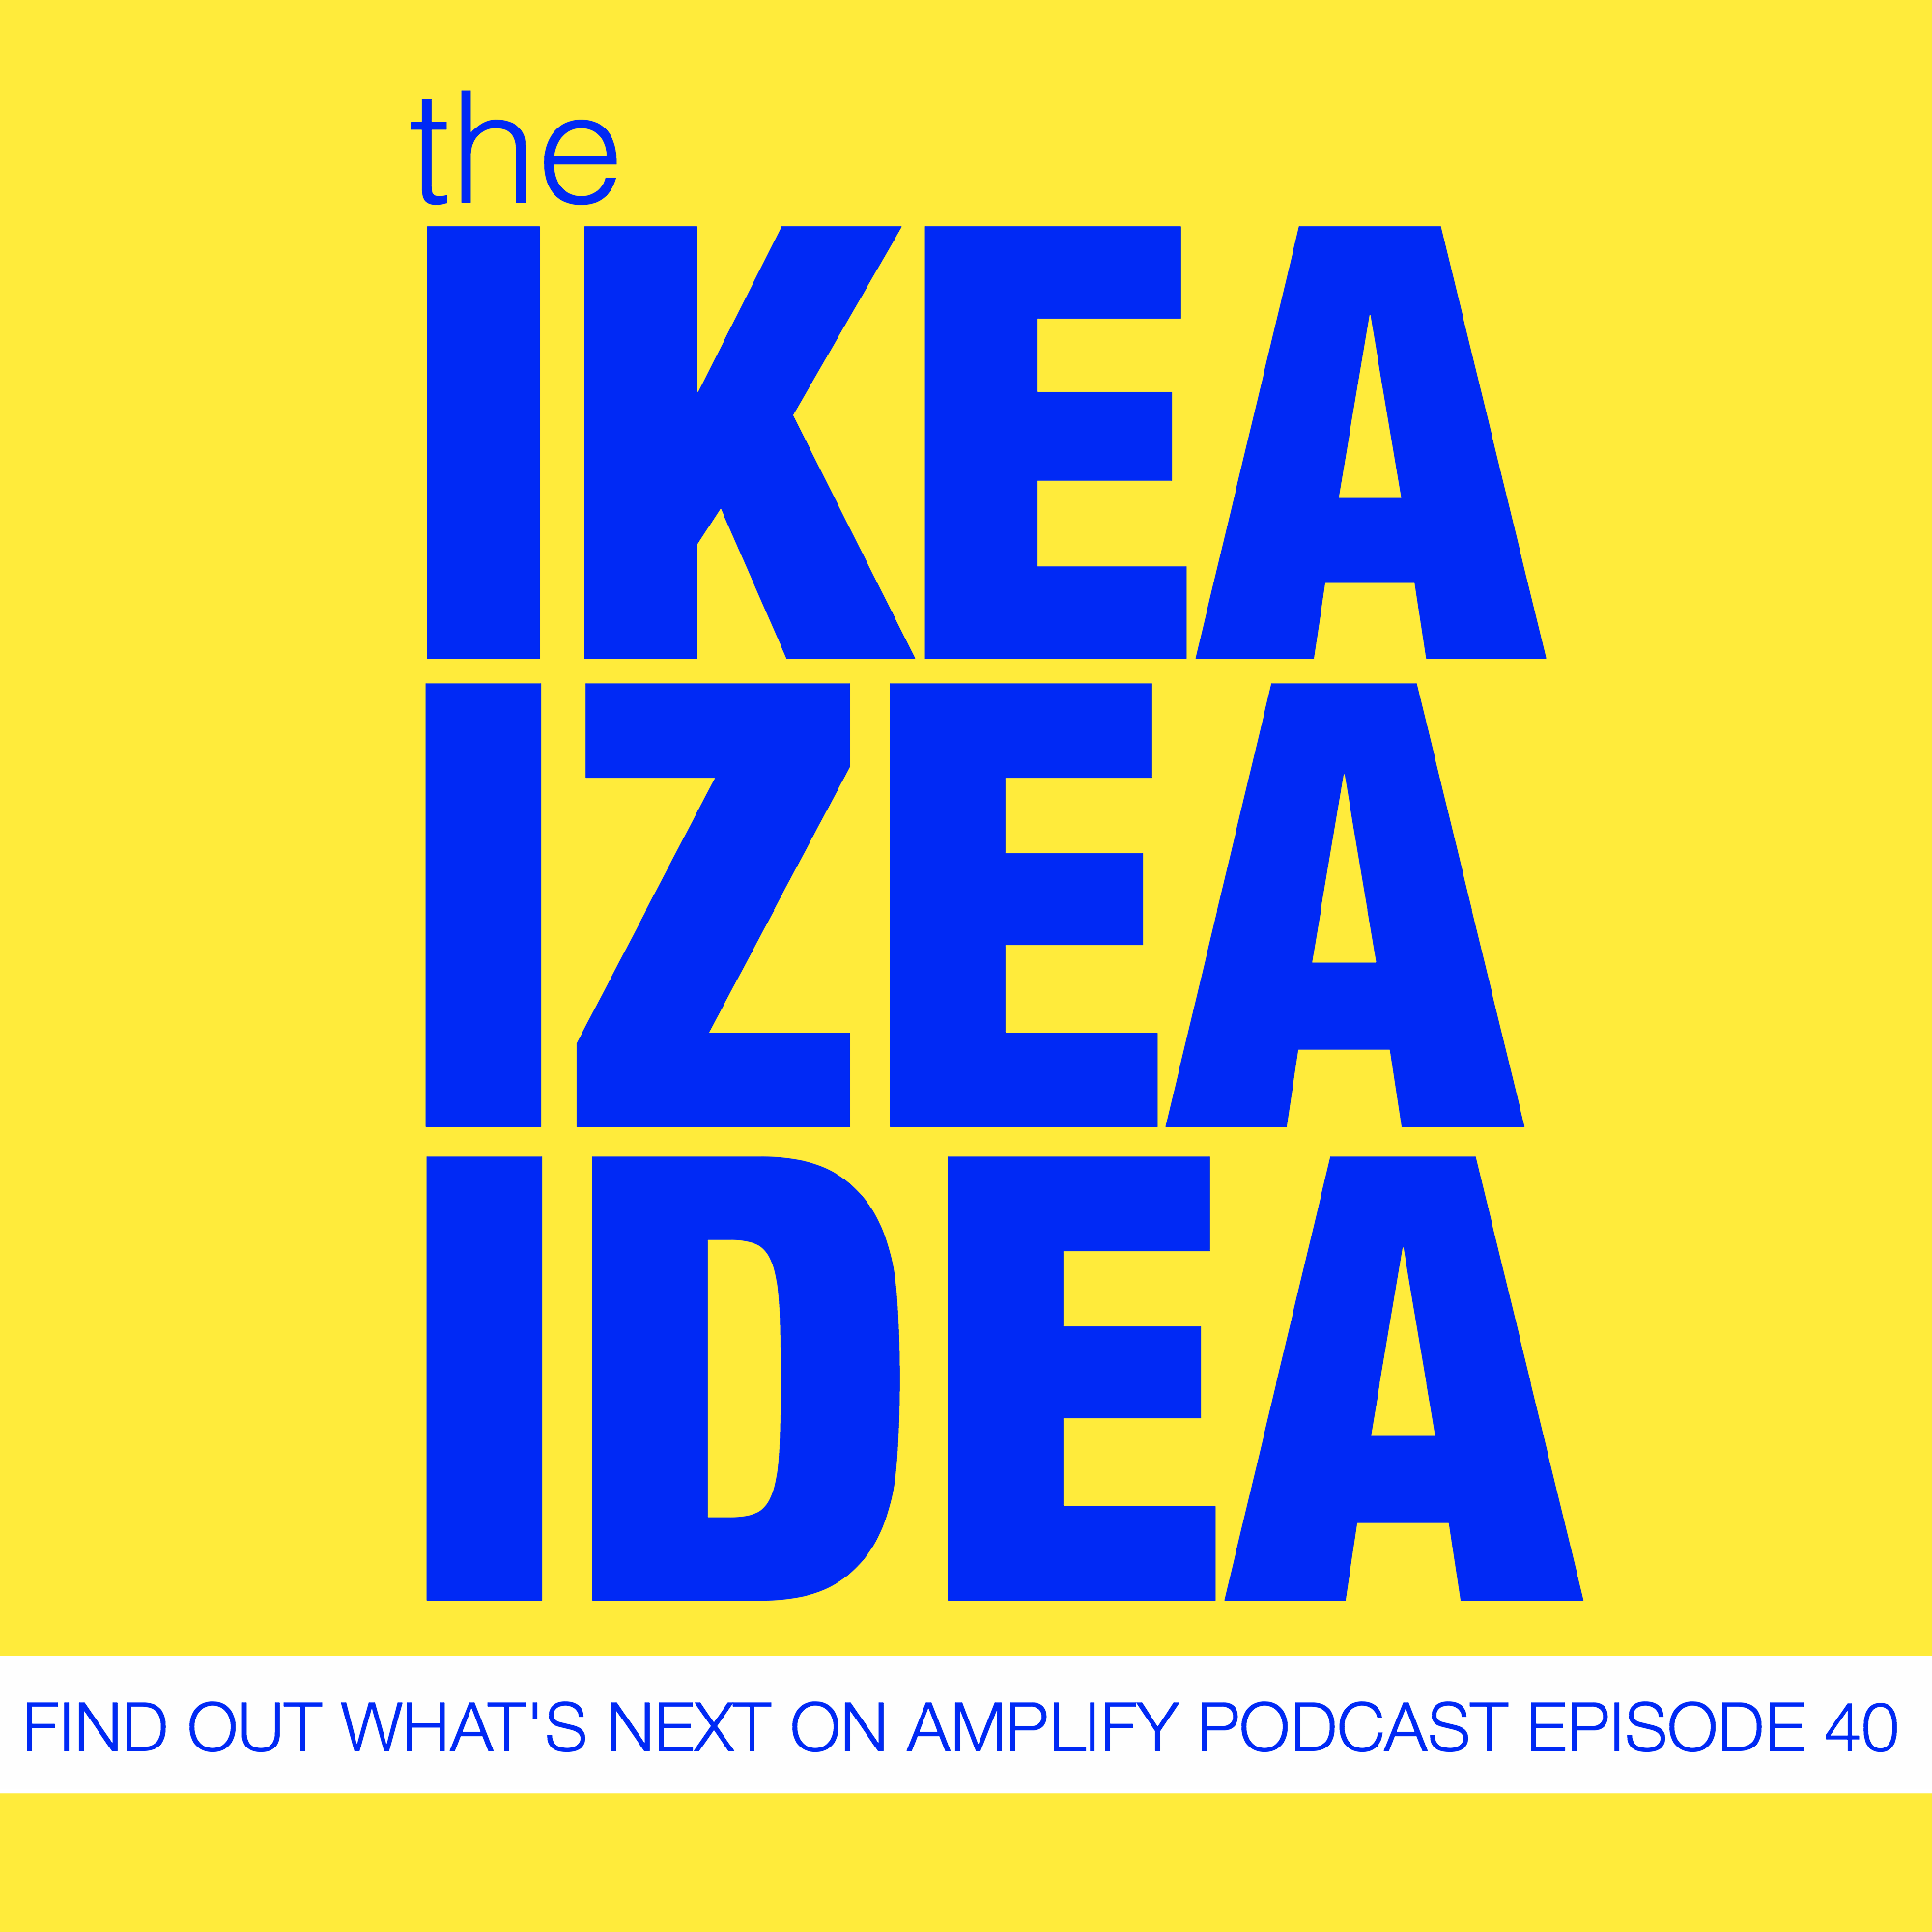 The IKEA IZEA Idea